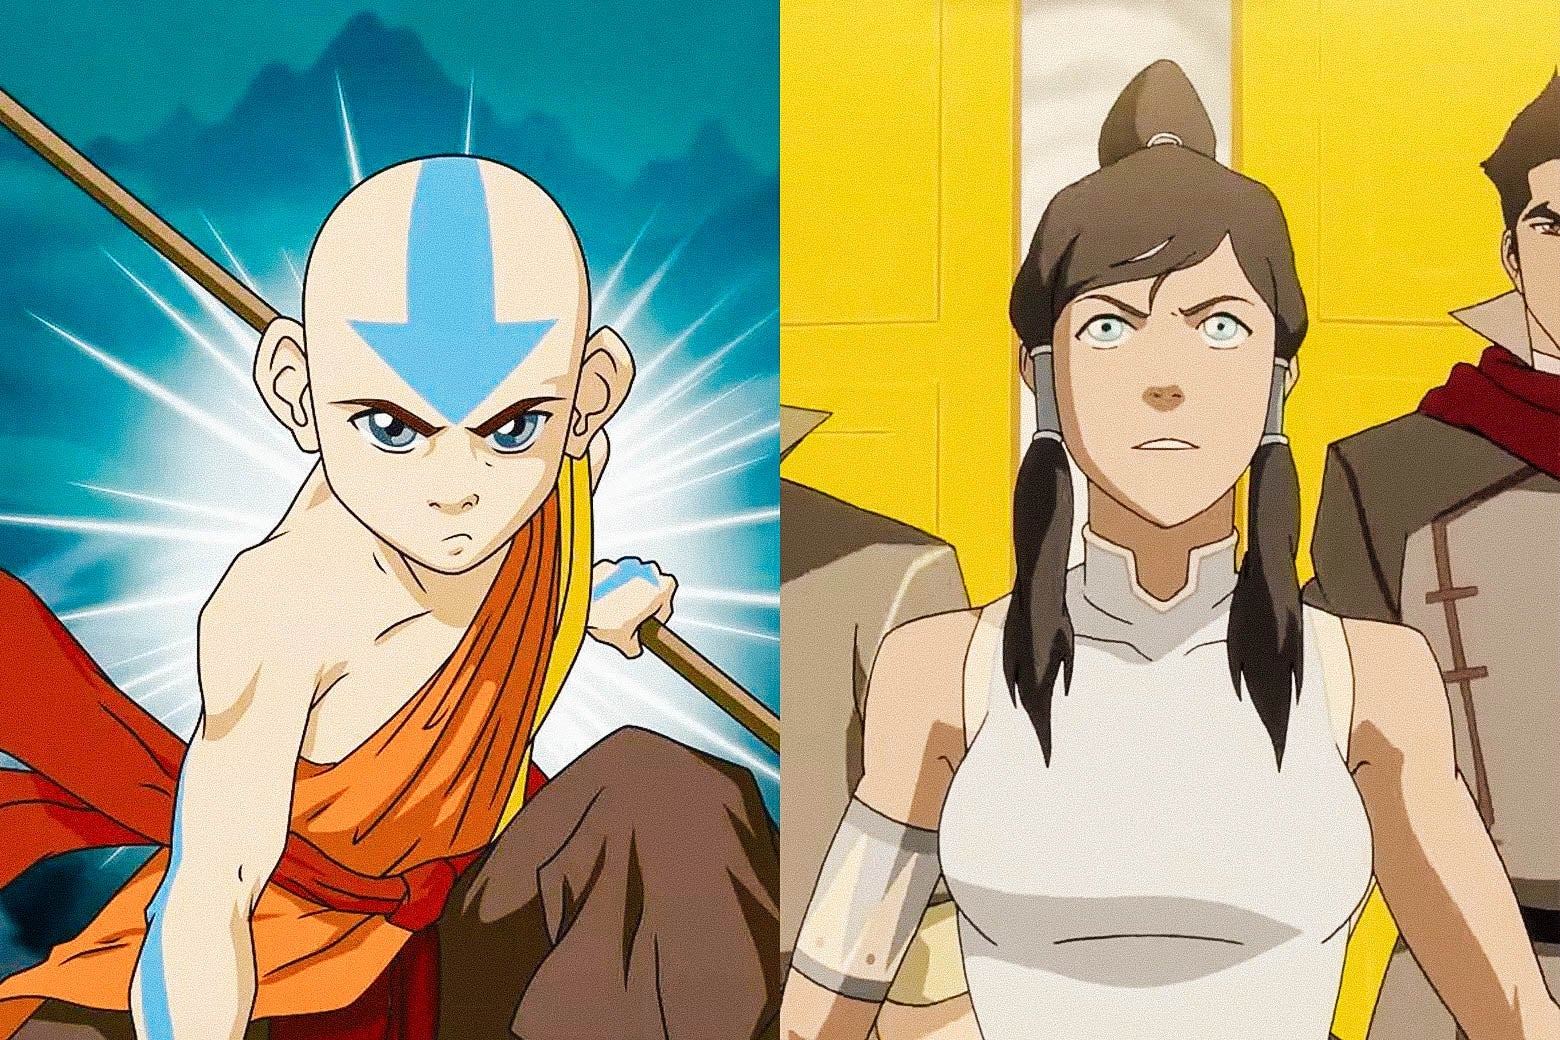 Aangs Avatar Movie Can Resolve Key Legend Of Korra Mysteries